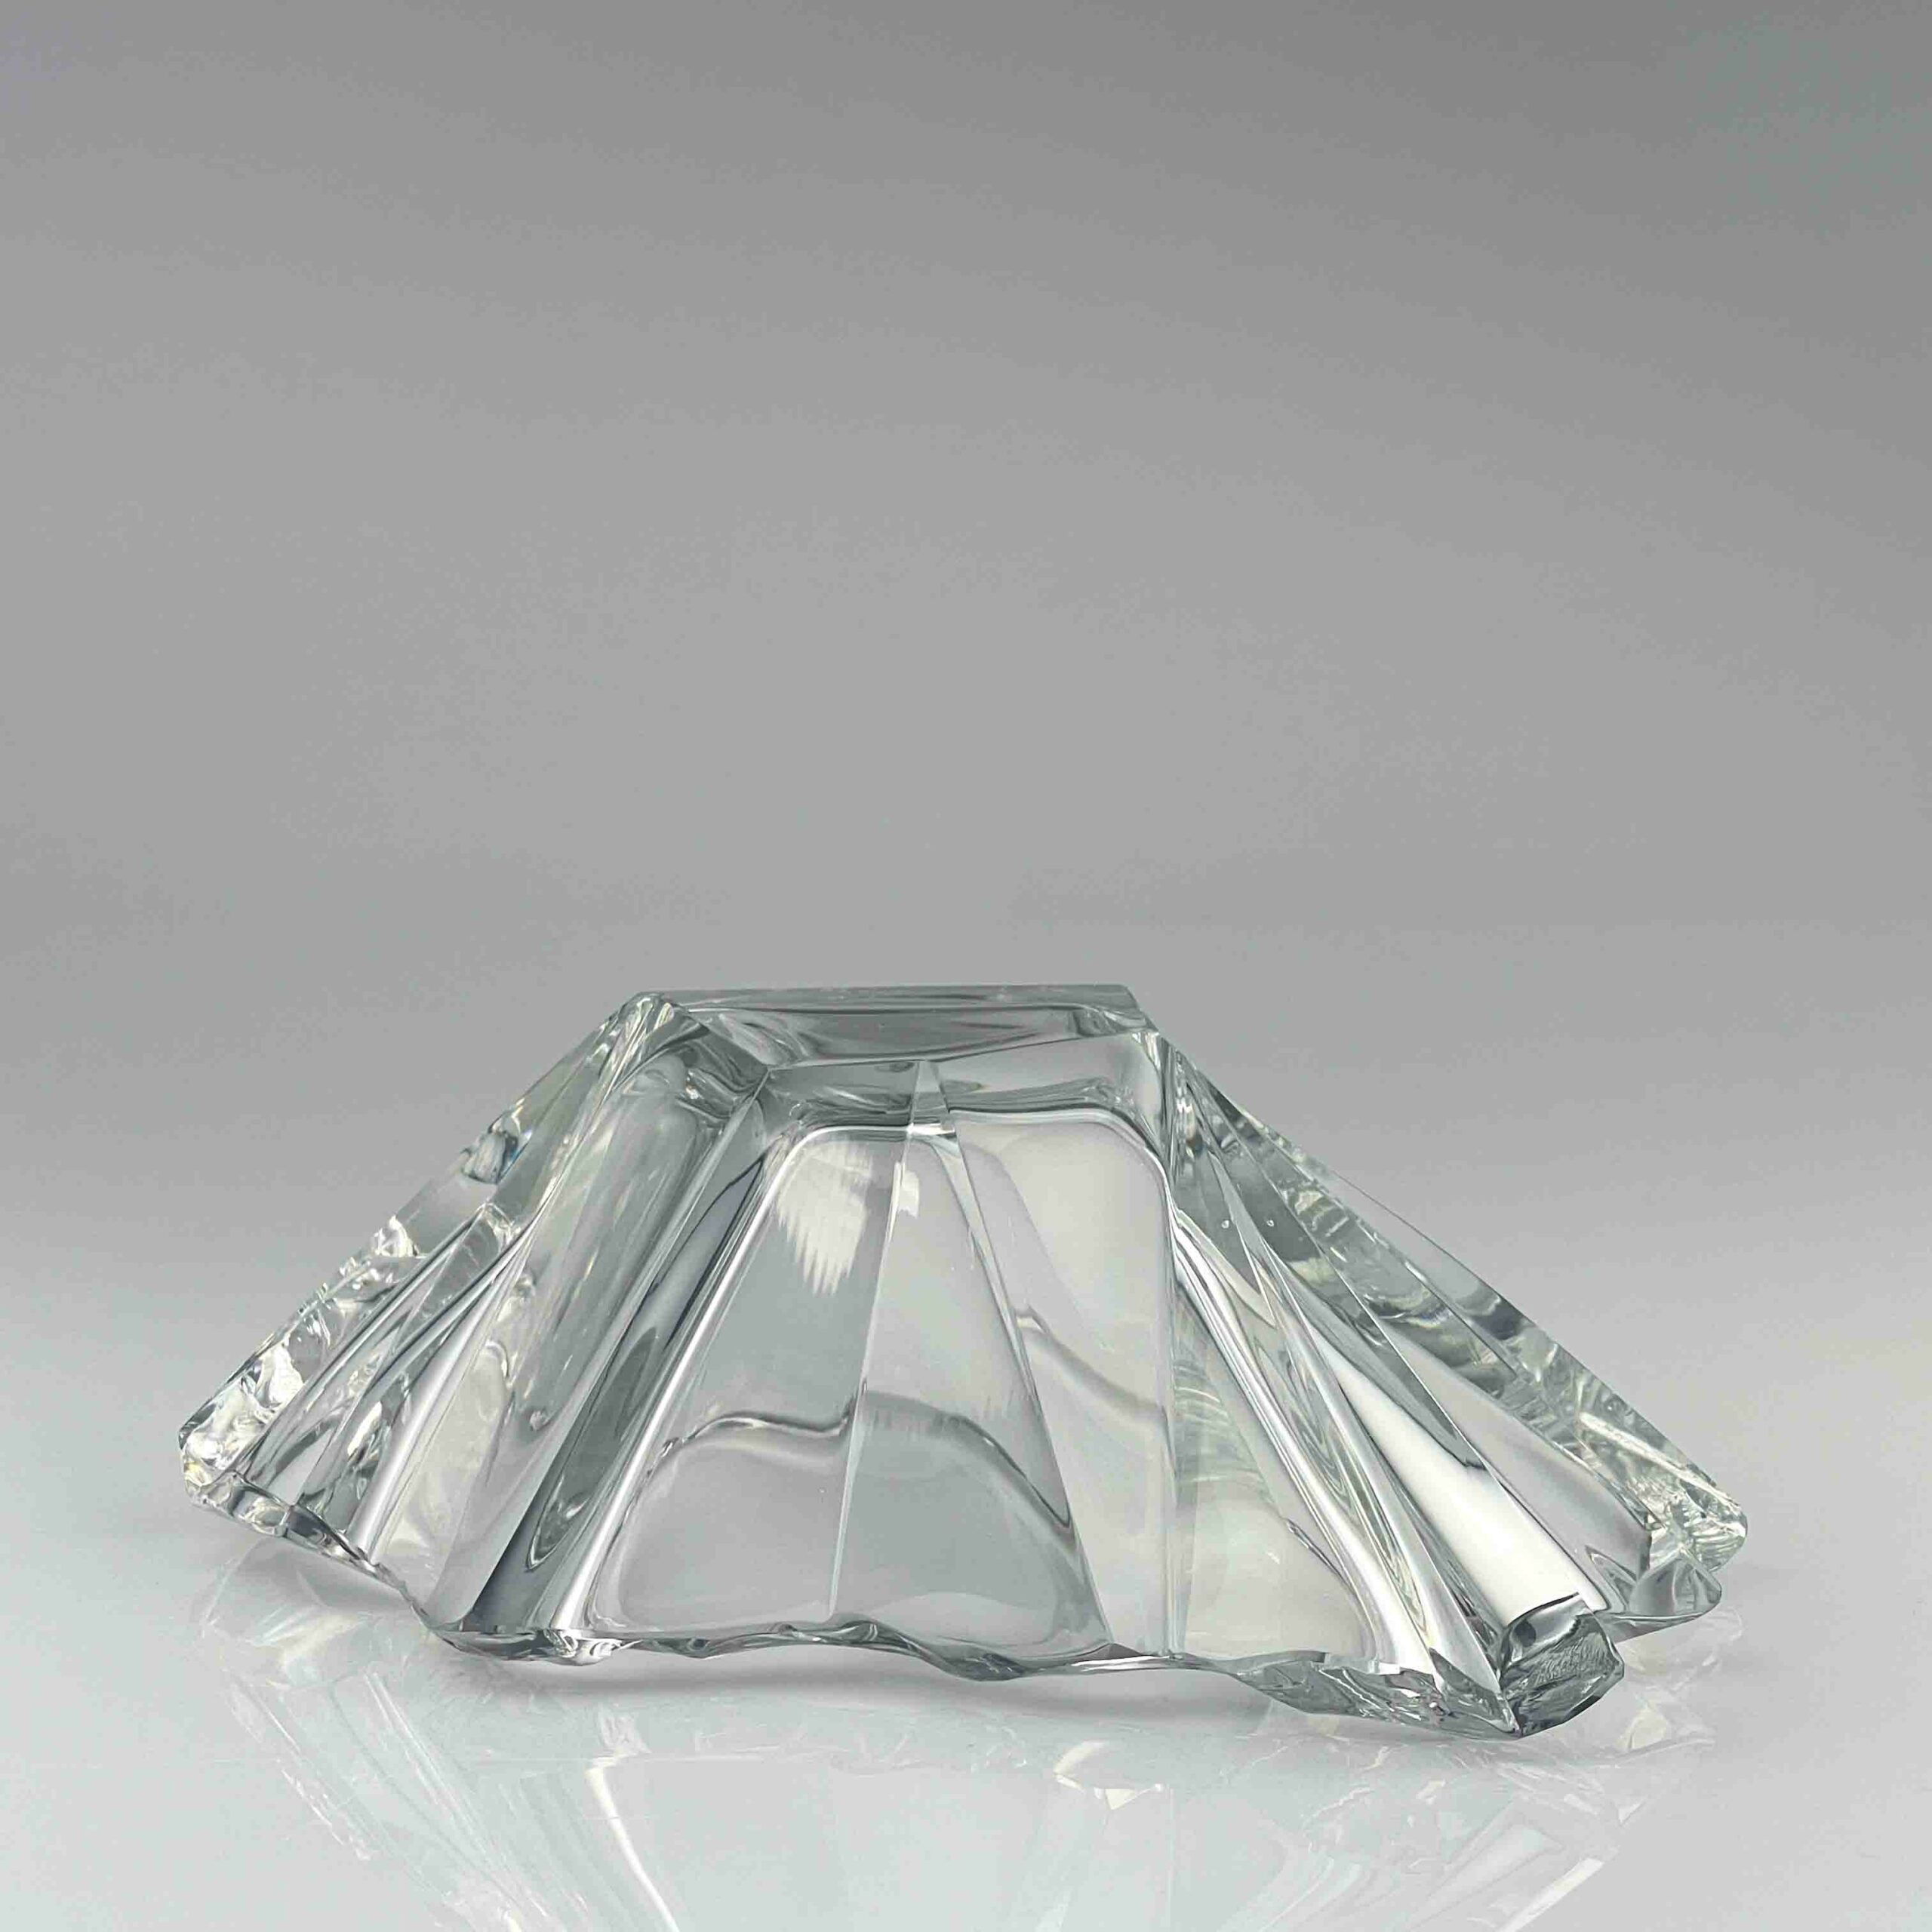 Tapio Wirkkala – A crystal Art-object “Jäänsäro” or “Iceblock”, model 3847 – Iittala, Finland circa 1960